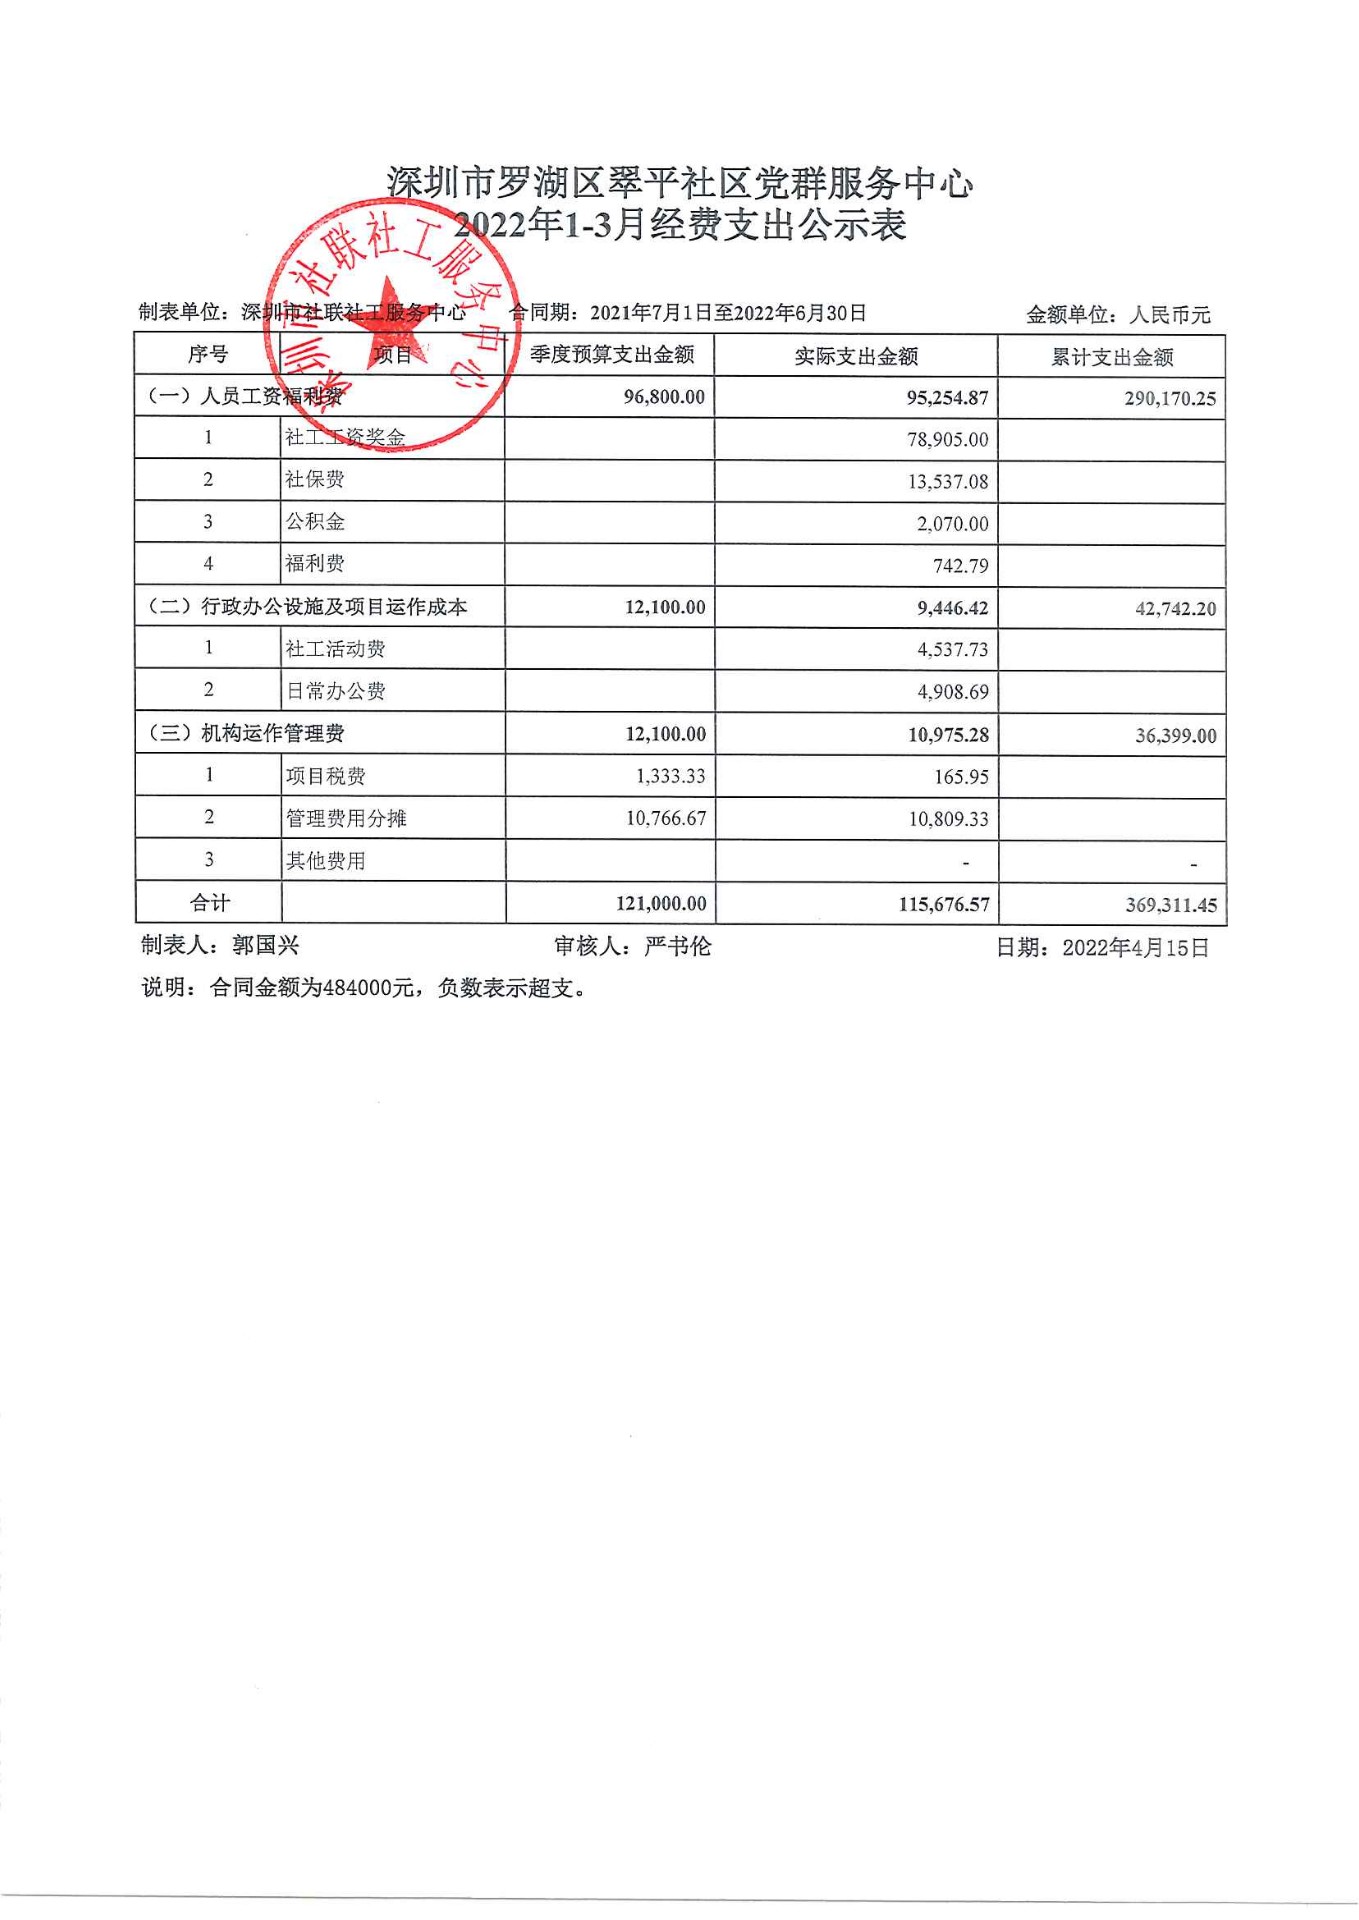 翠平社区2022年1-3月财务公示表